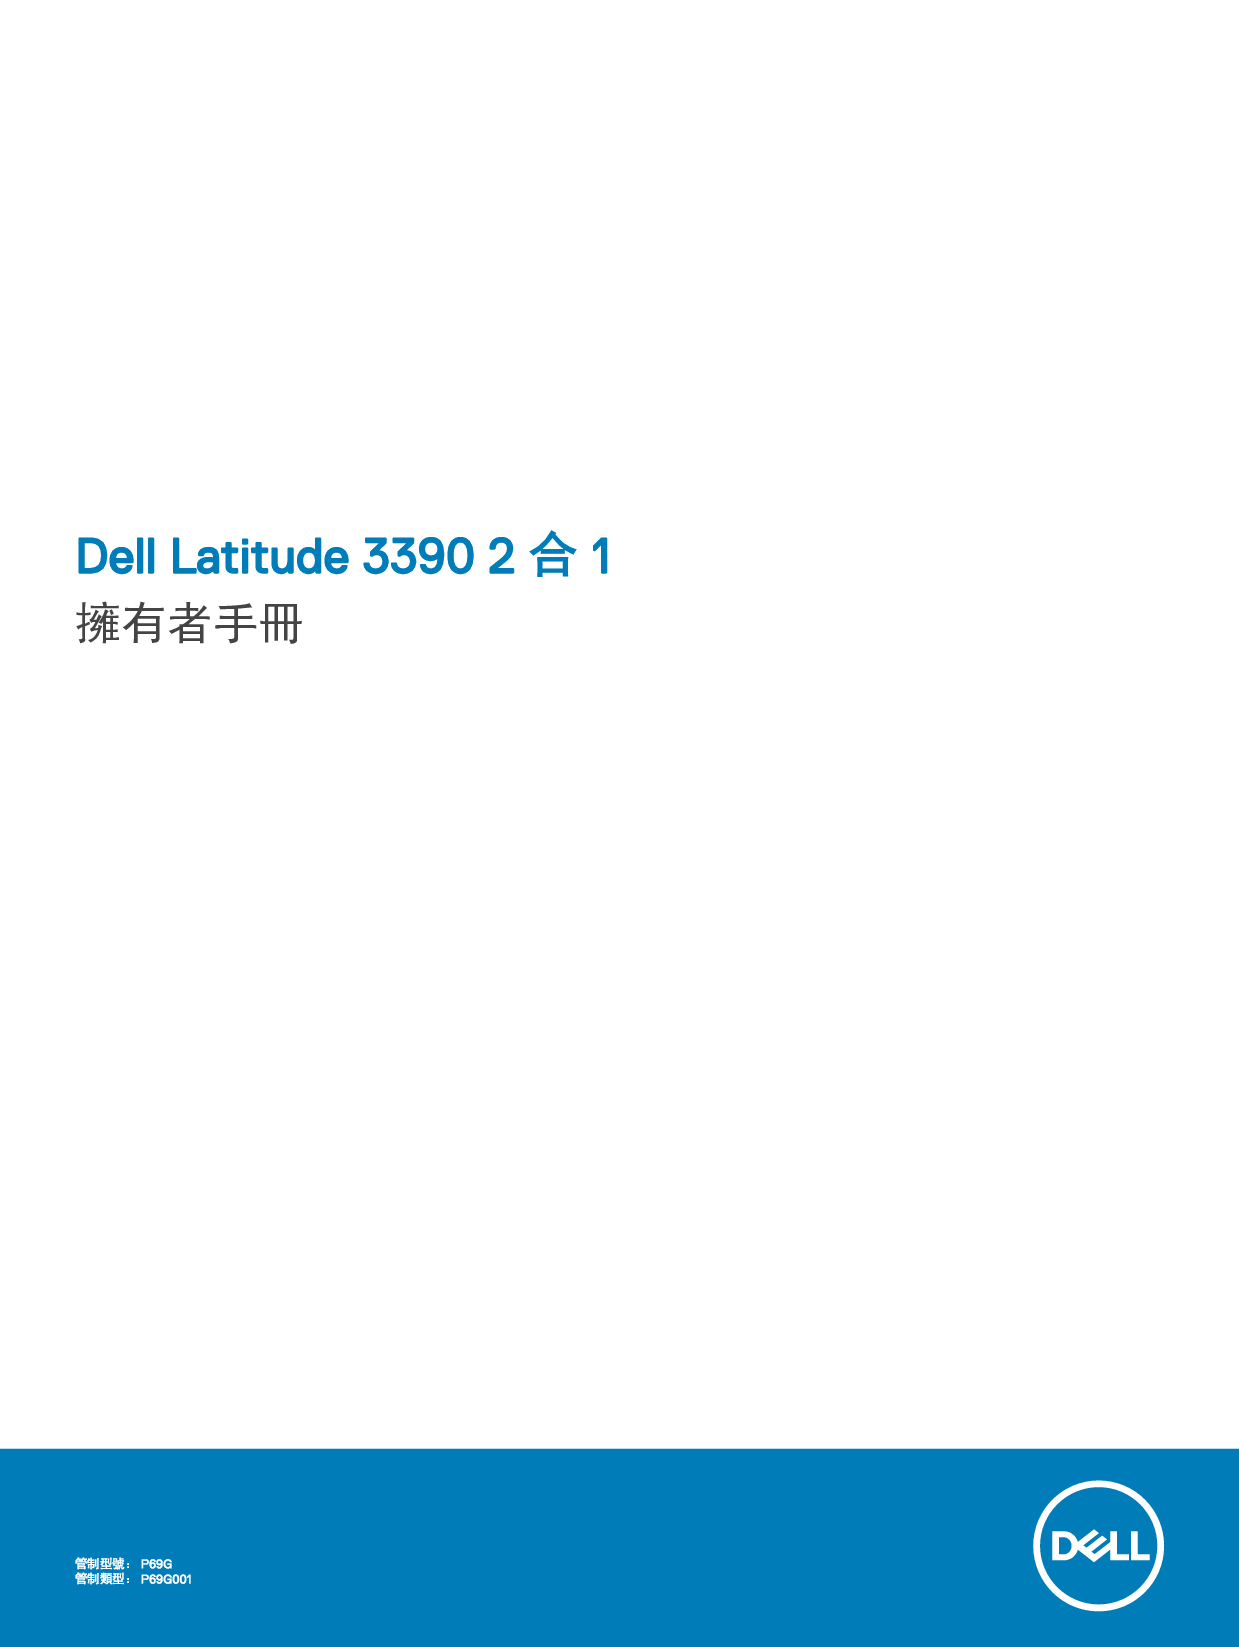 戴尔 Dell Latitude 3390 2-IN-1 繁体 用户手册 封面